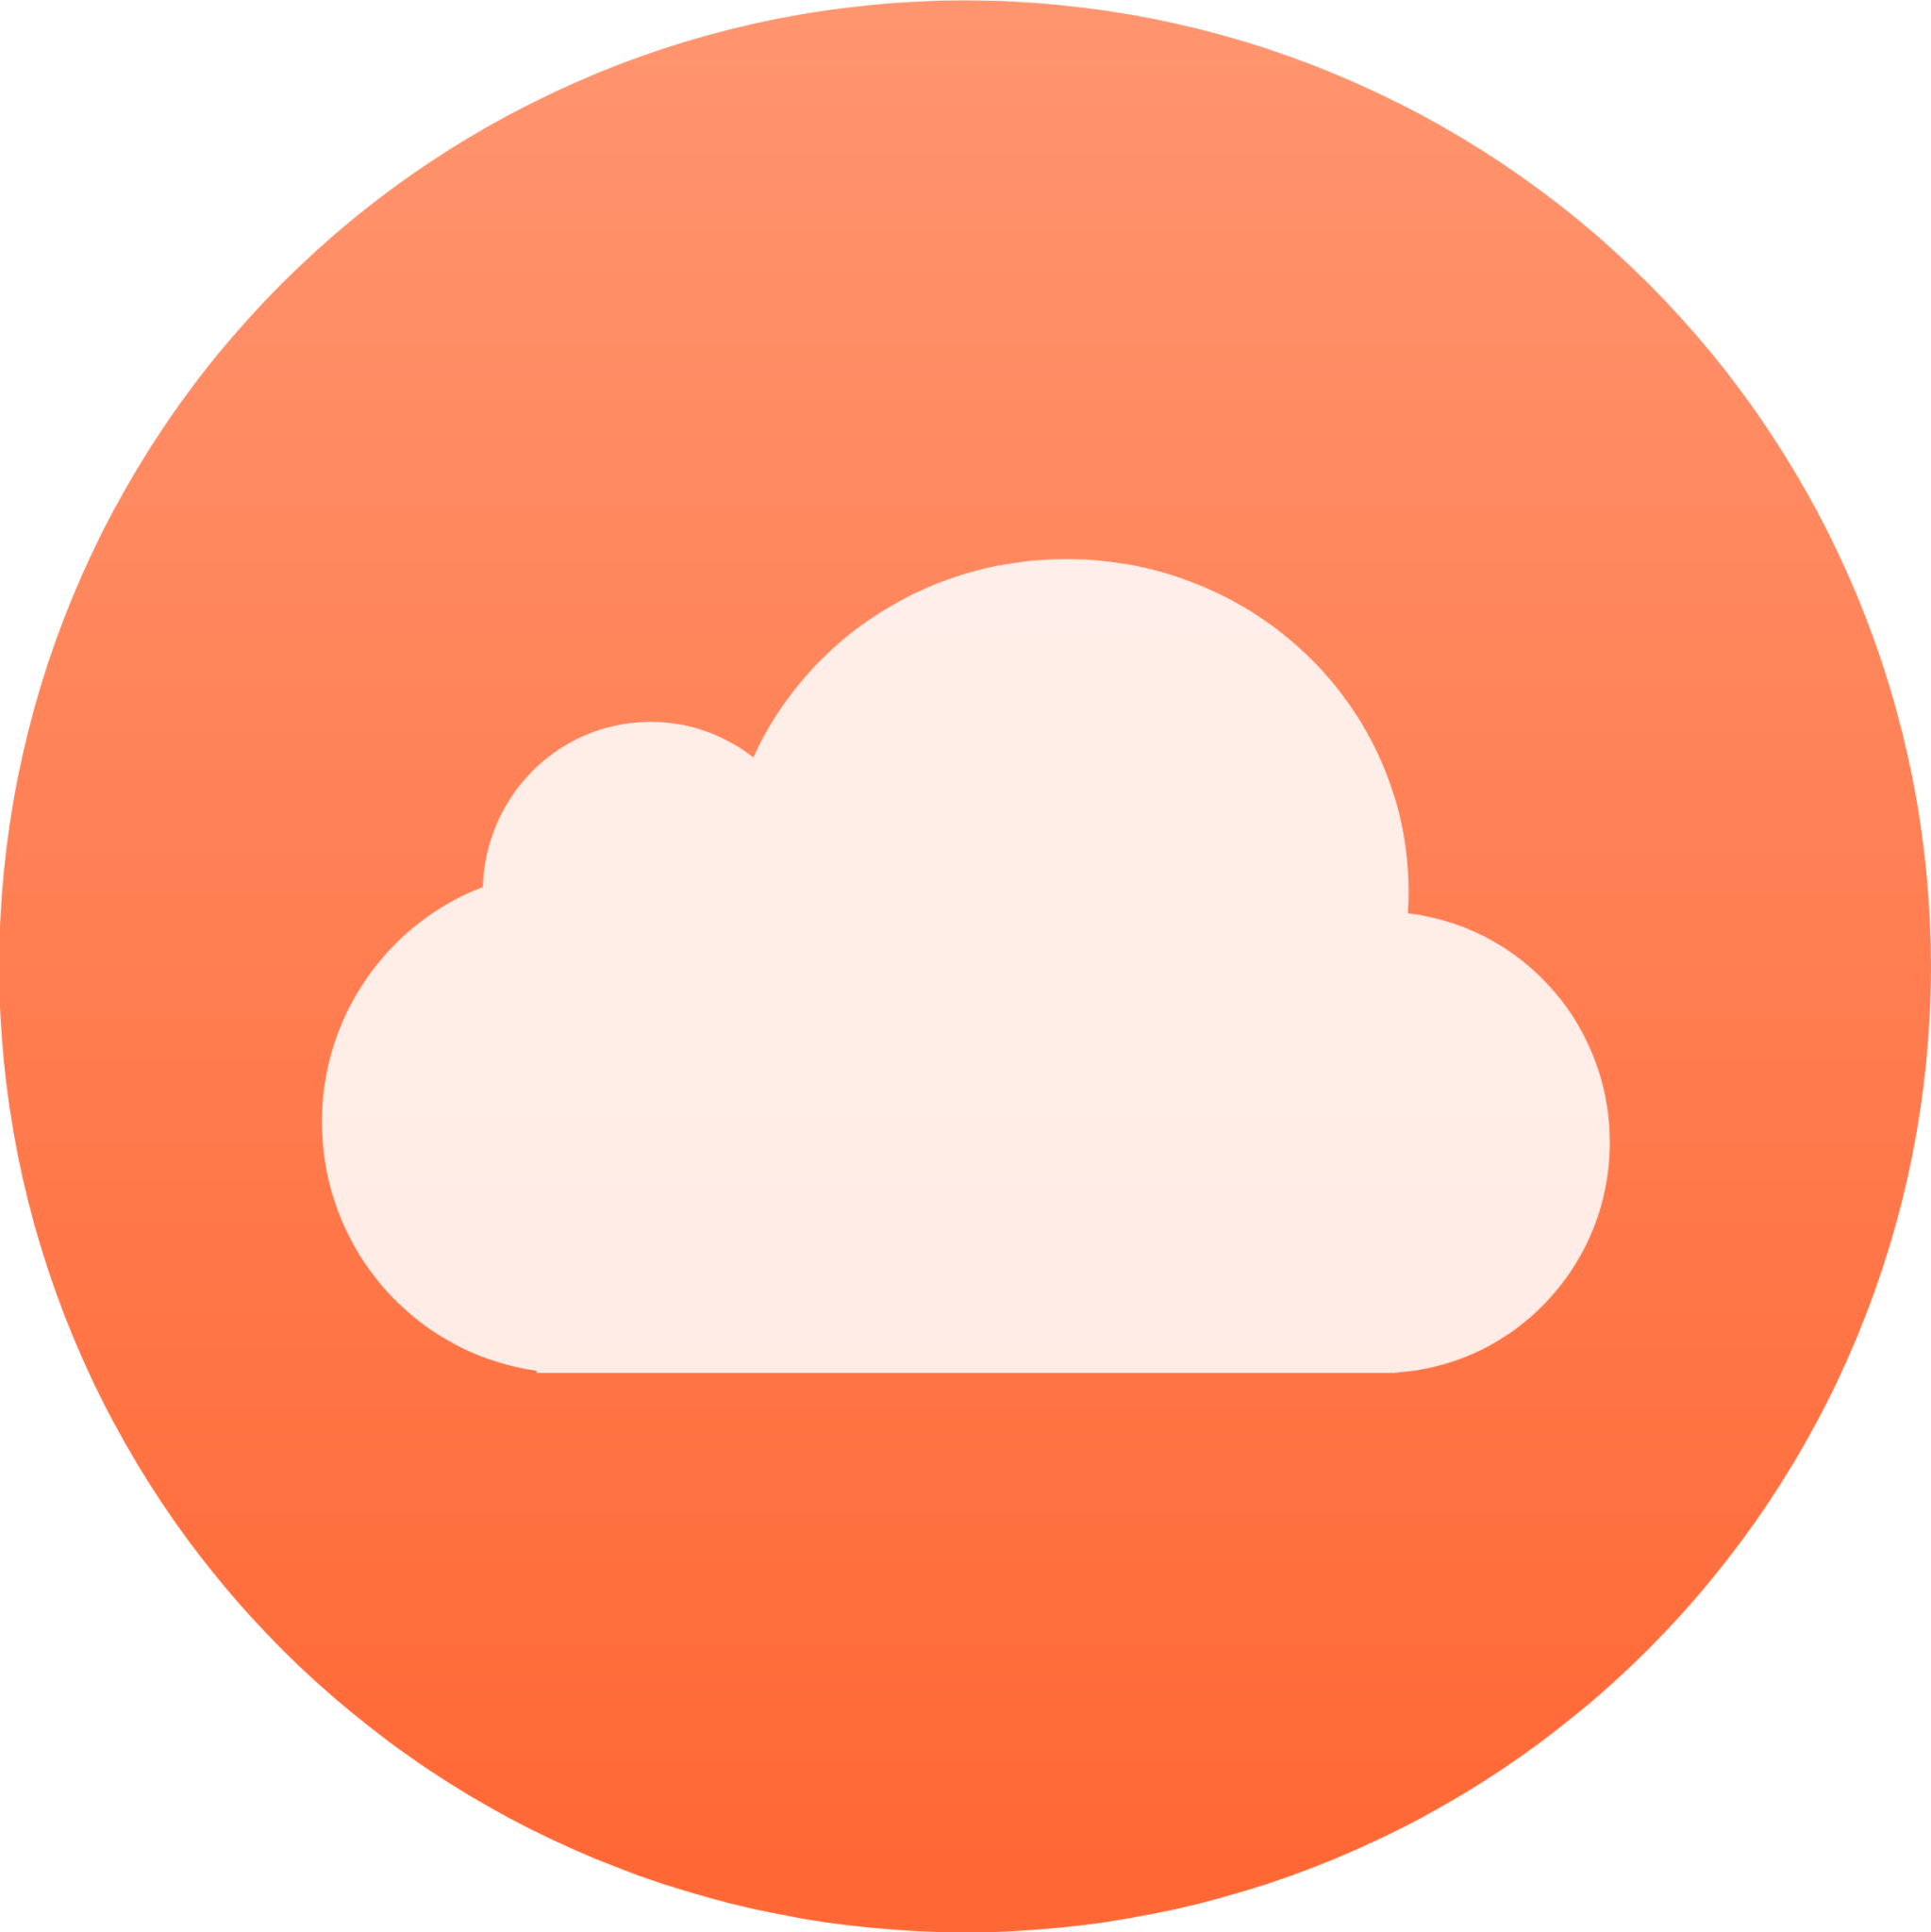 ubuntuone client icon